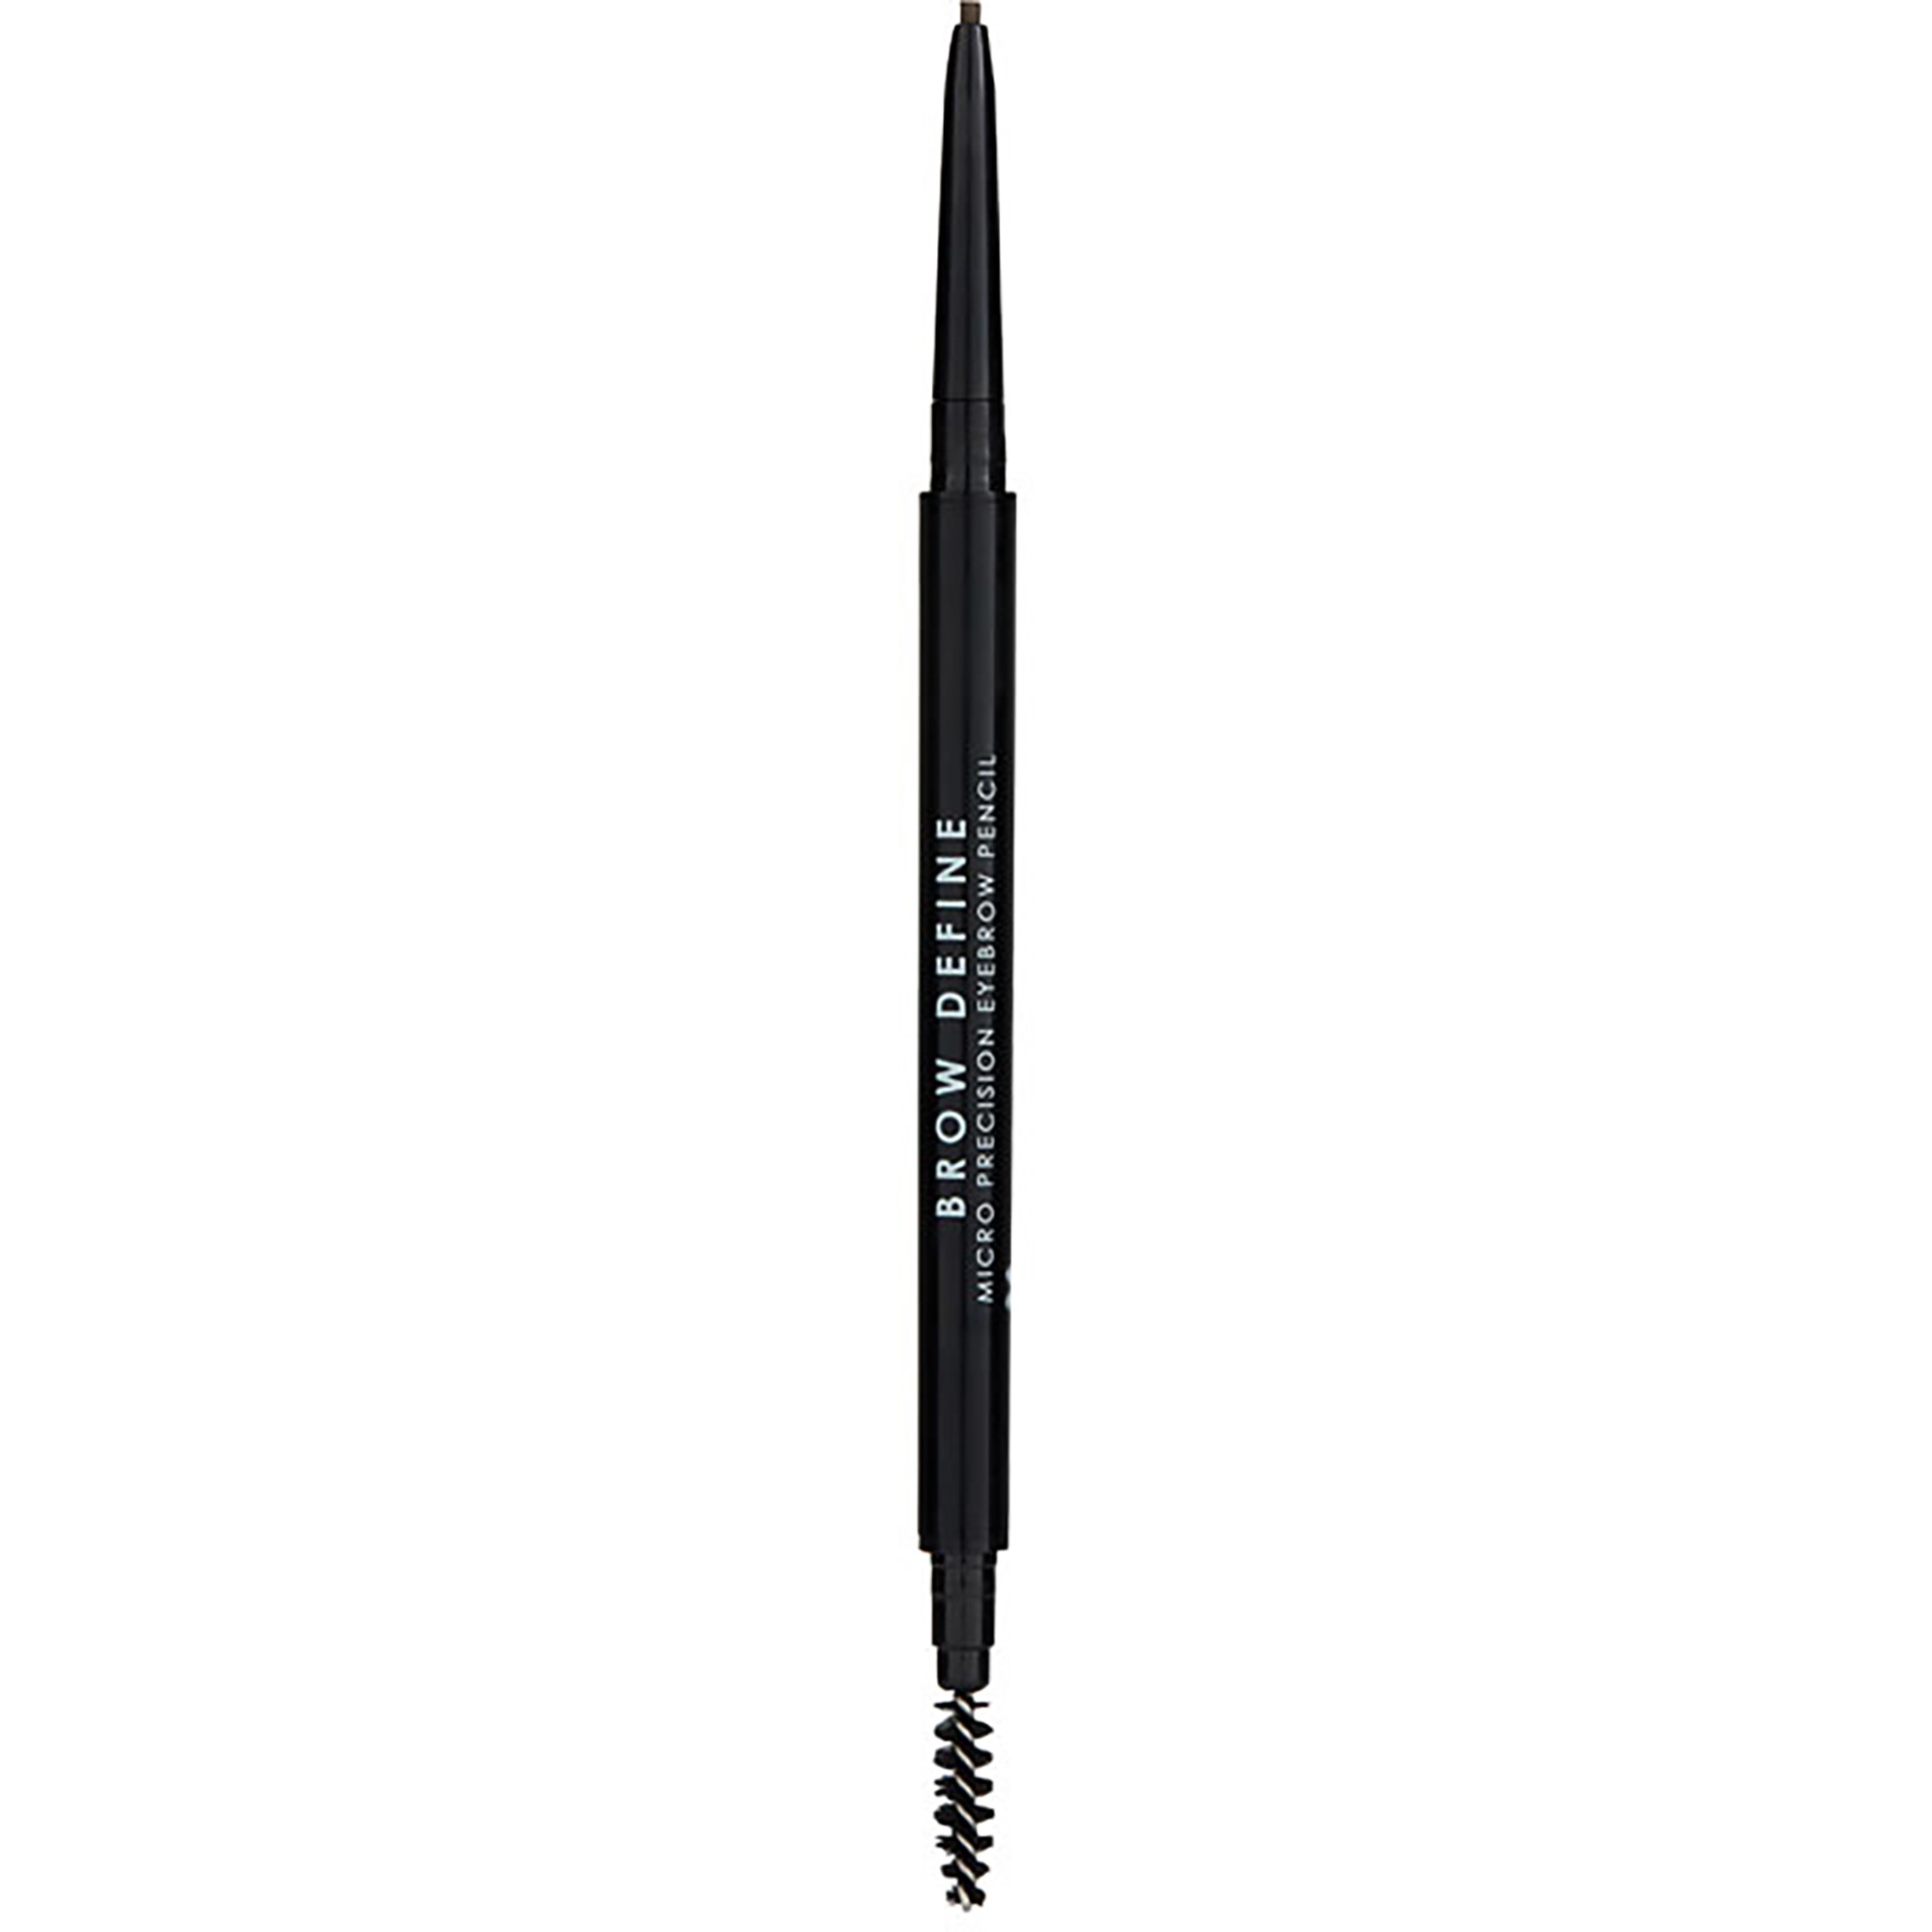 Makeup Academy Brow Define Micro Precision Eyebrow Pencil Dark Brown